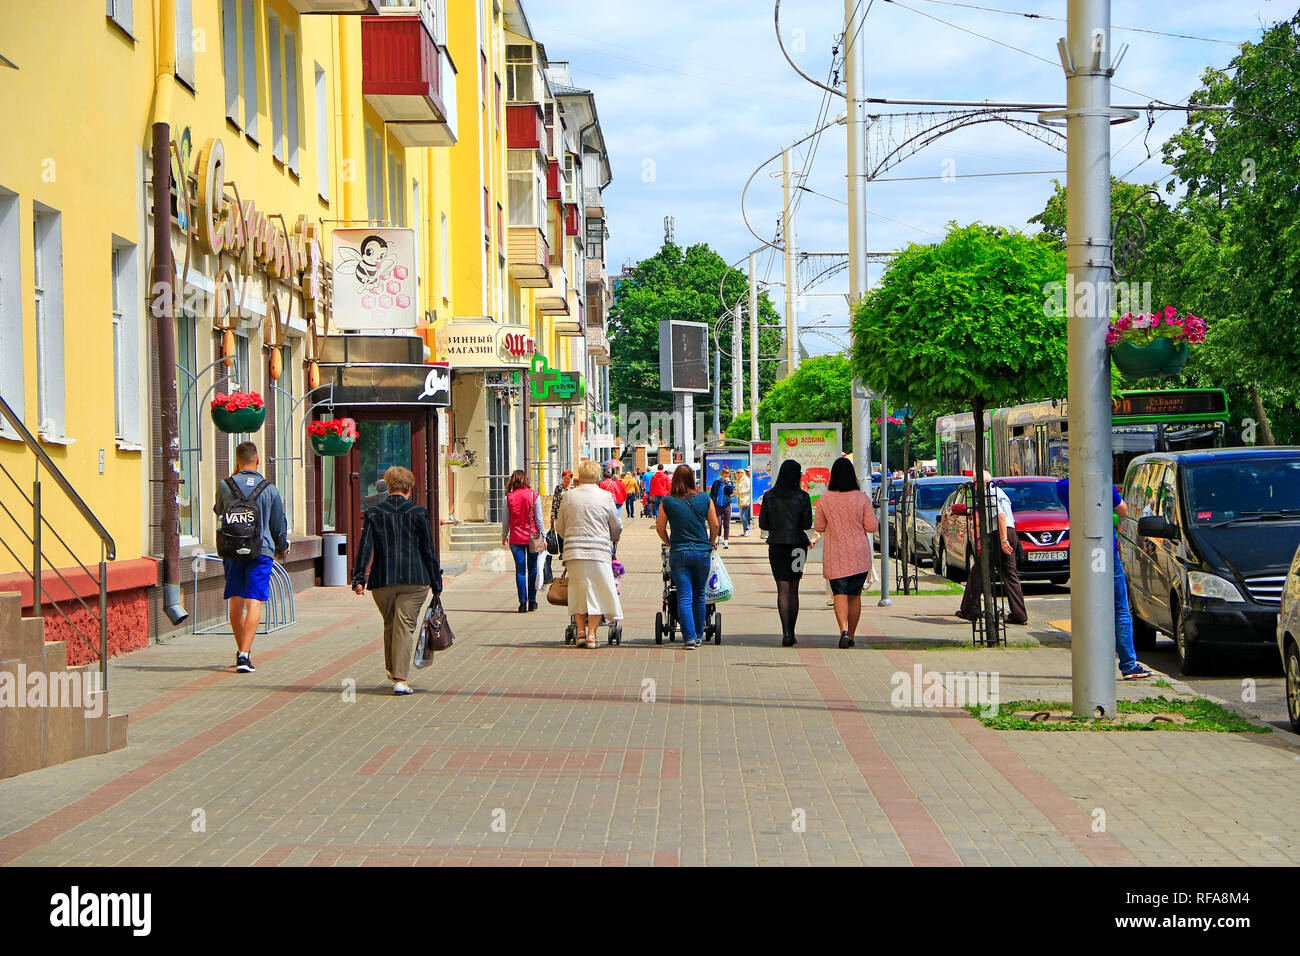 Les gens à pied à travers la ville. Rue de la ville biélorusse de Gomel. Les passants par rush pour affaires. L'agitation urbaine. La vie en ville. Les gens marcher sur occupation anonyme c Banque D'Images